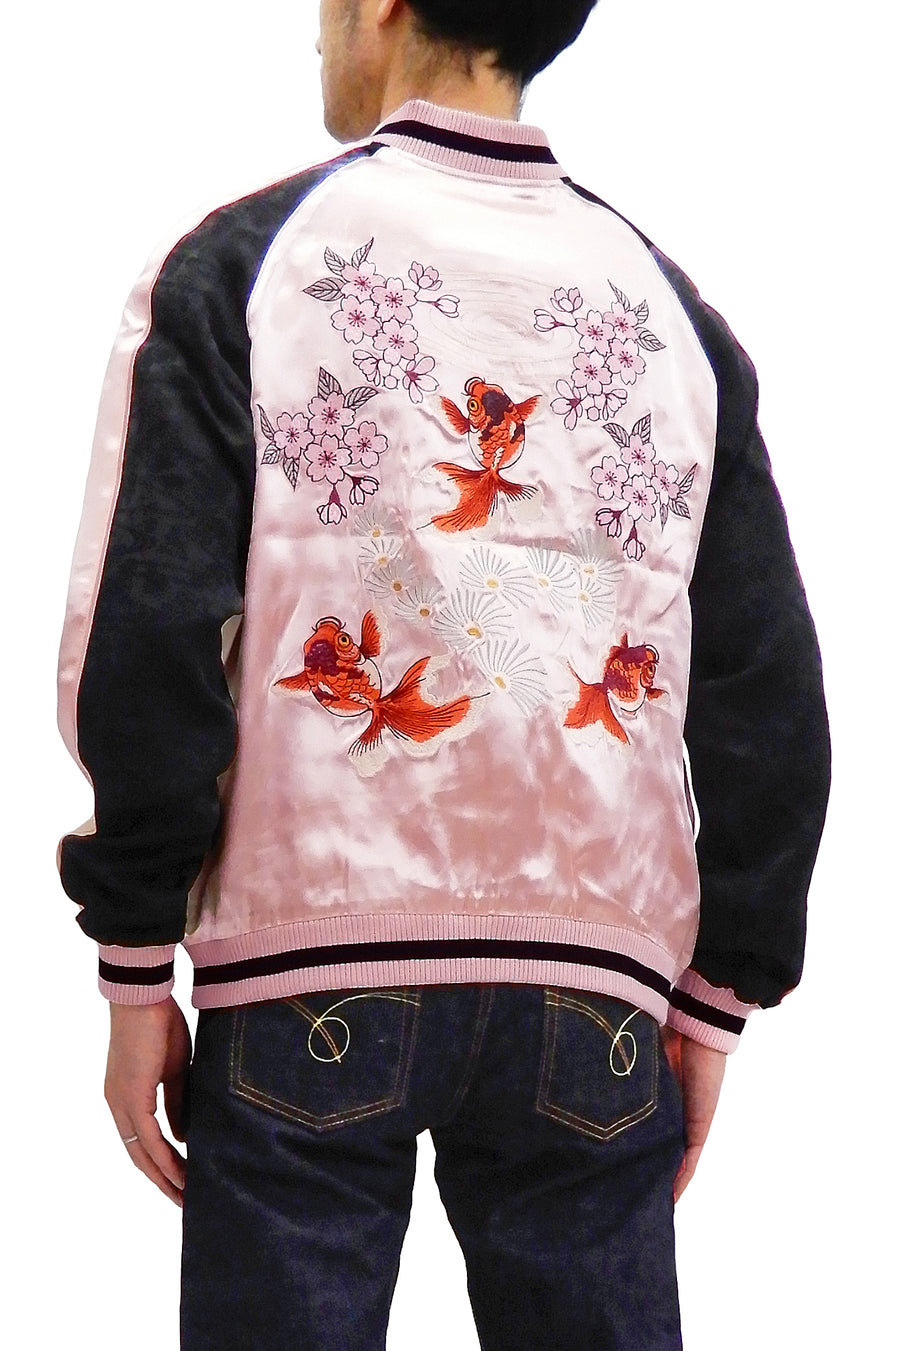 Japanesque Men's Japanese Souvenir Jacket Goldfish Embroidery 